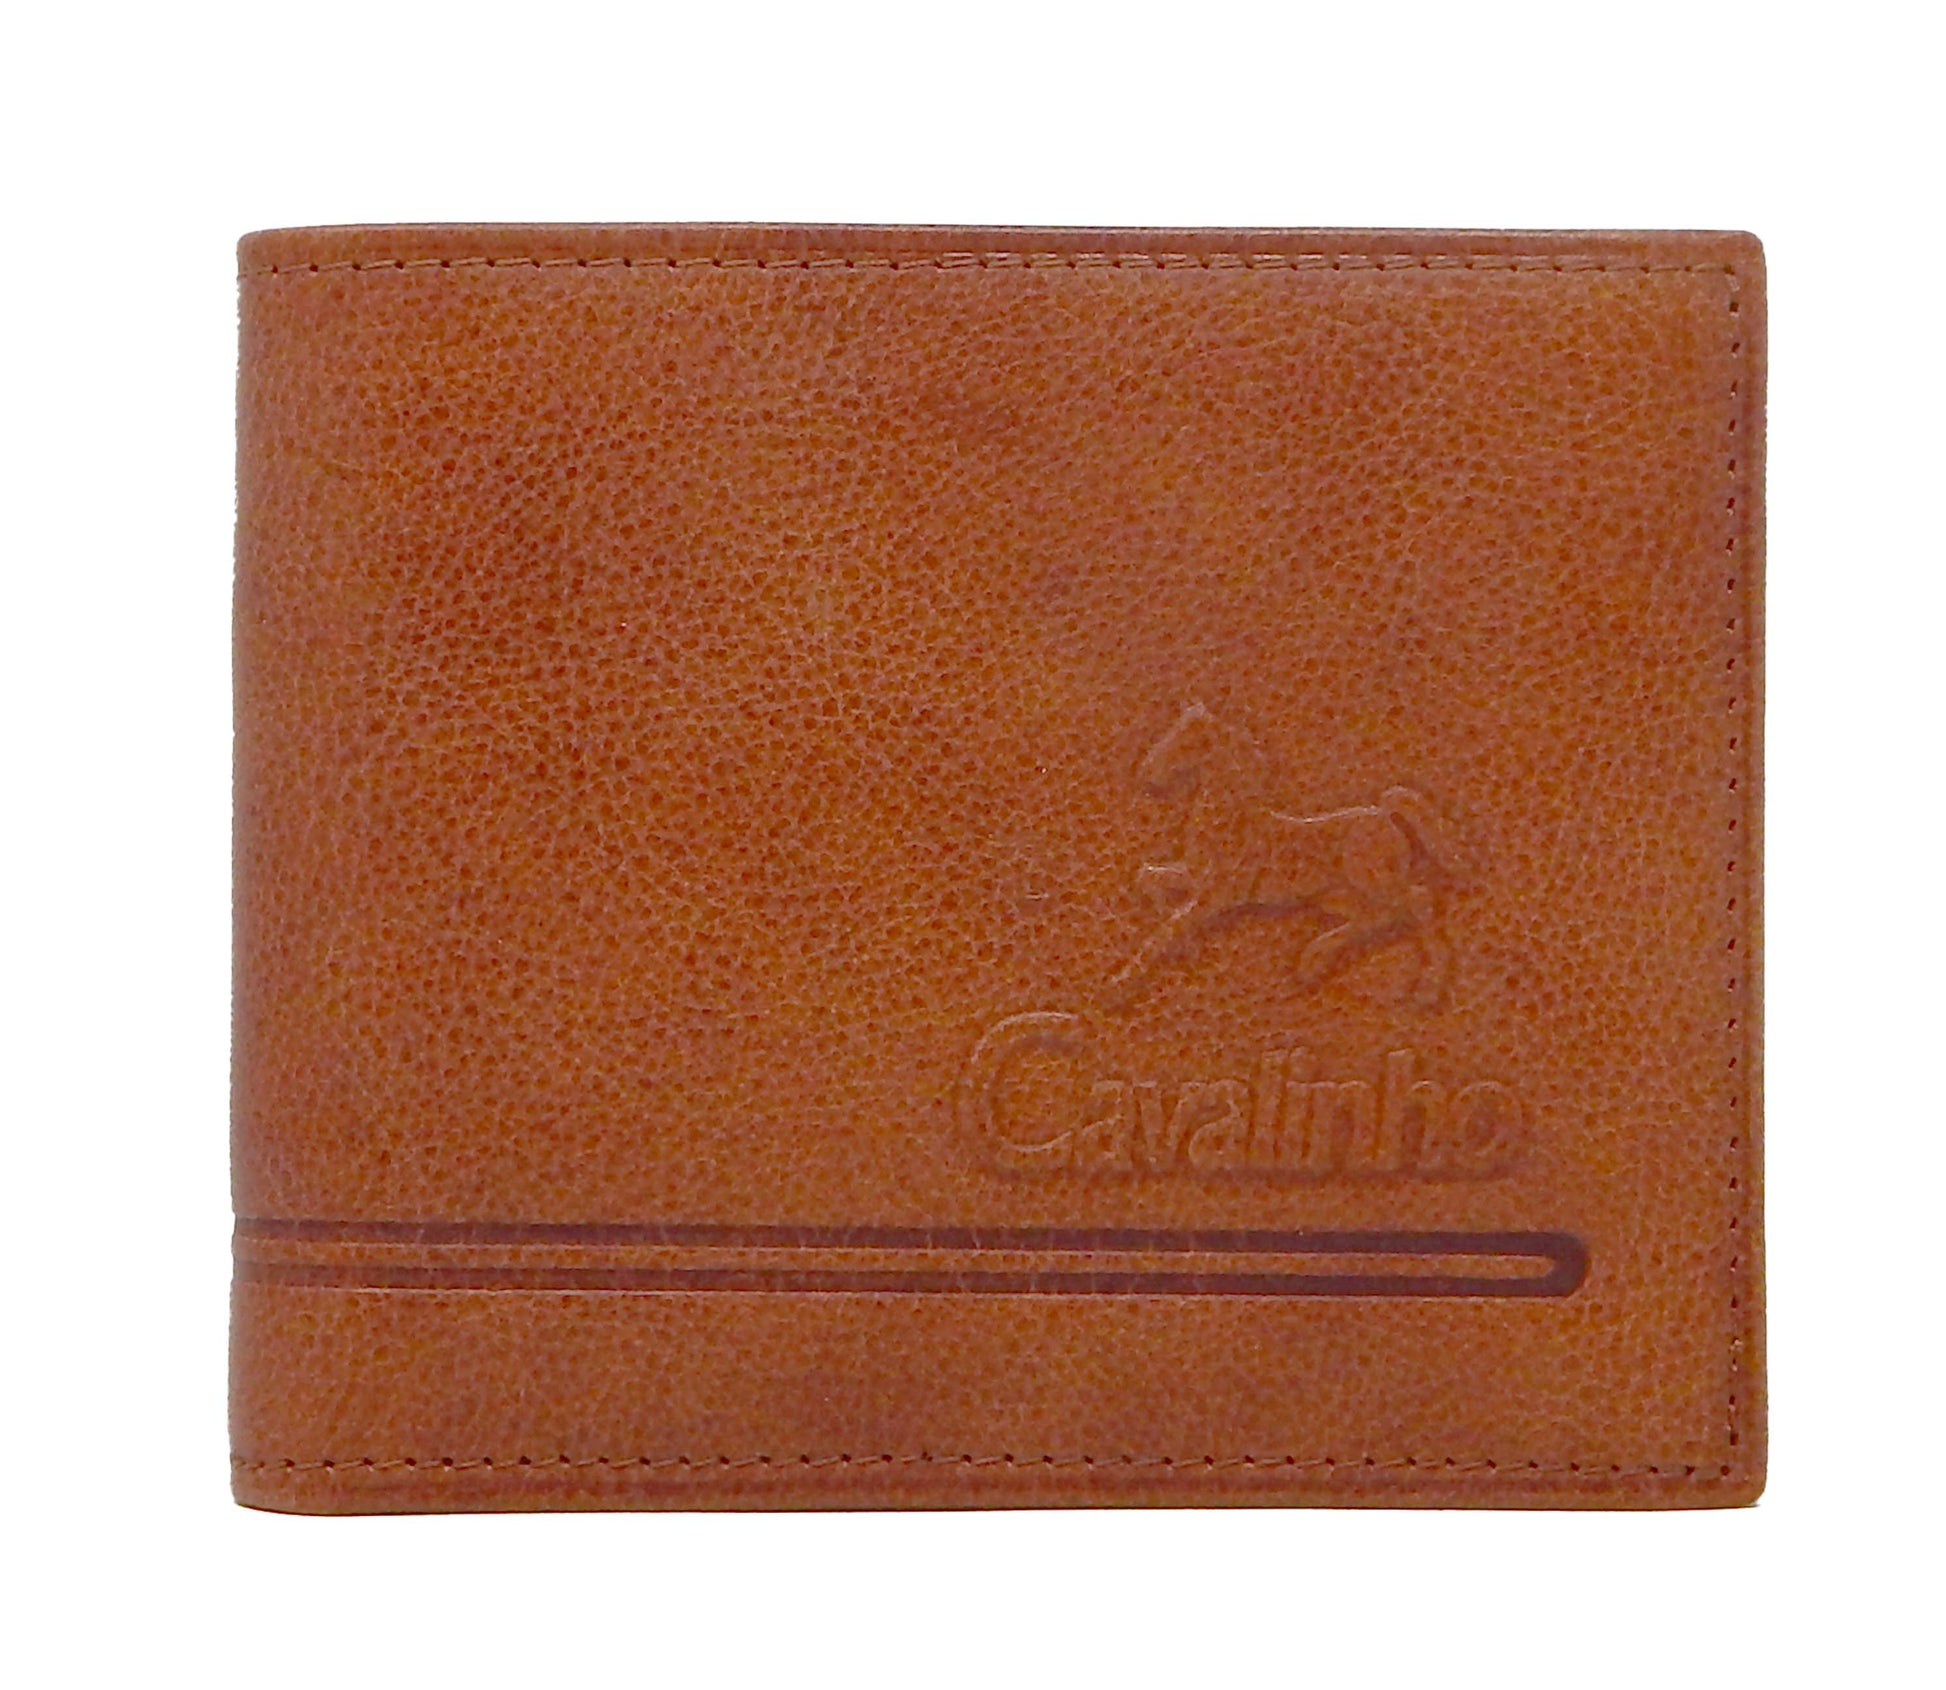 Cavalinho Men's Trifold Leather Wallet - SaddleBrown - 28610505.13.99_1